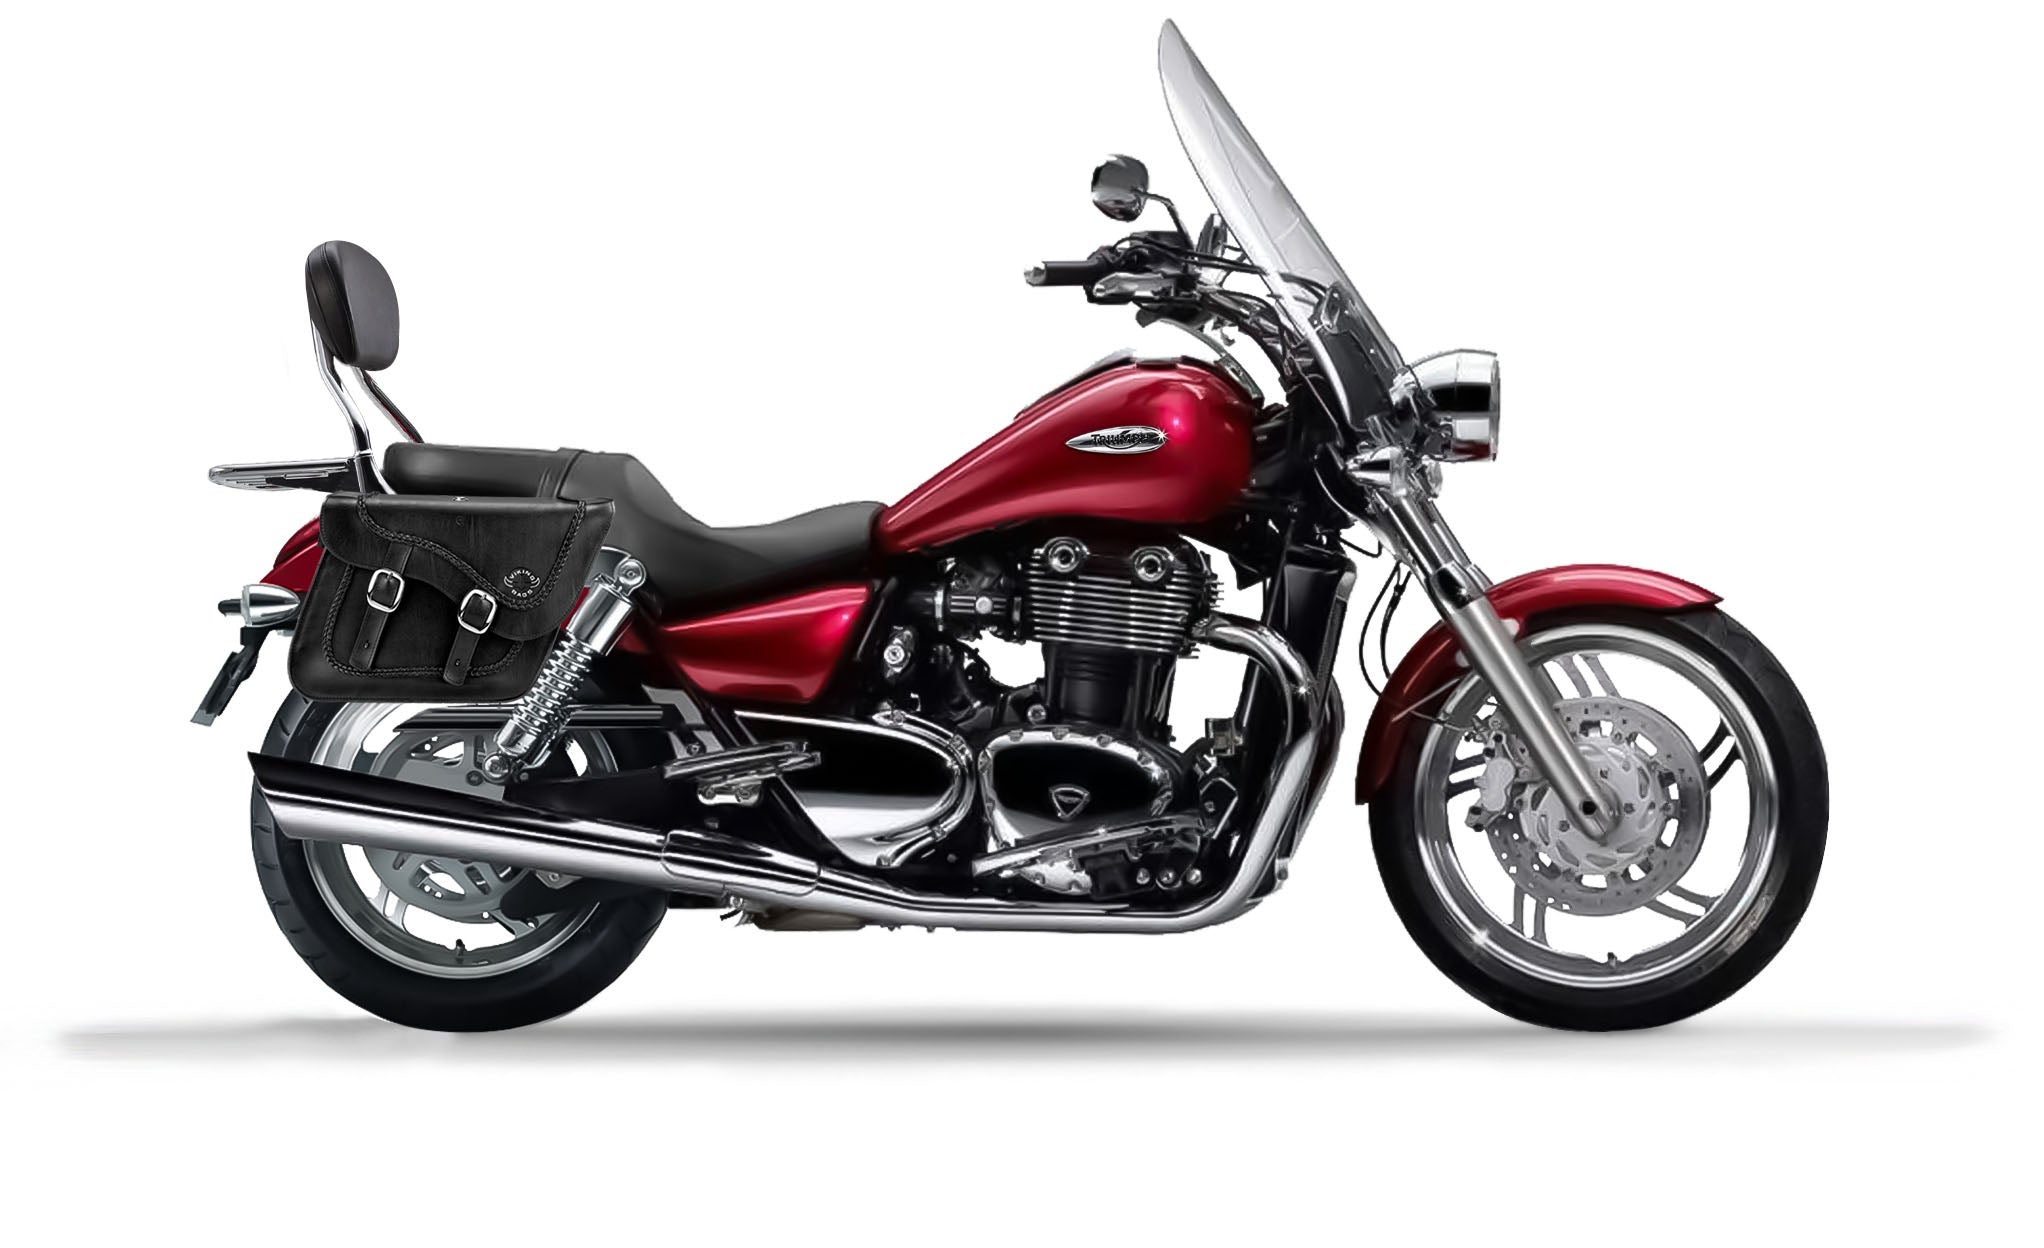 Viking Americano Triumph Thunderbird Se Braided Large Leather Motorcycle Saddlebags on Bike Photo @expand